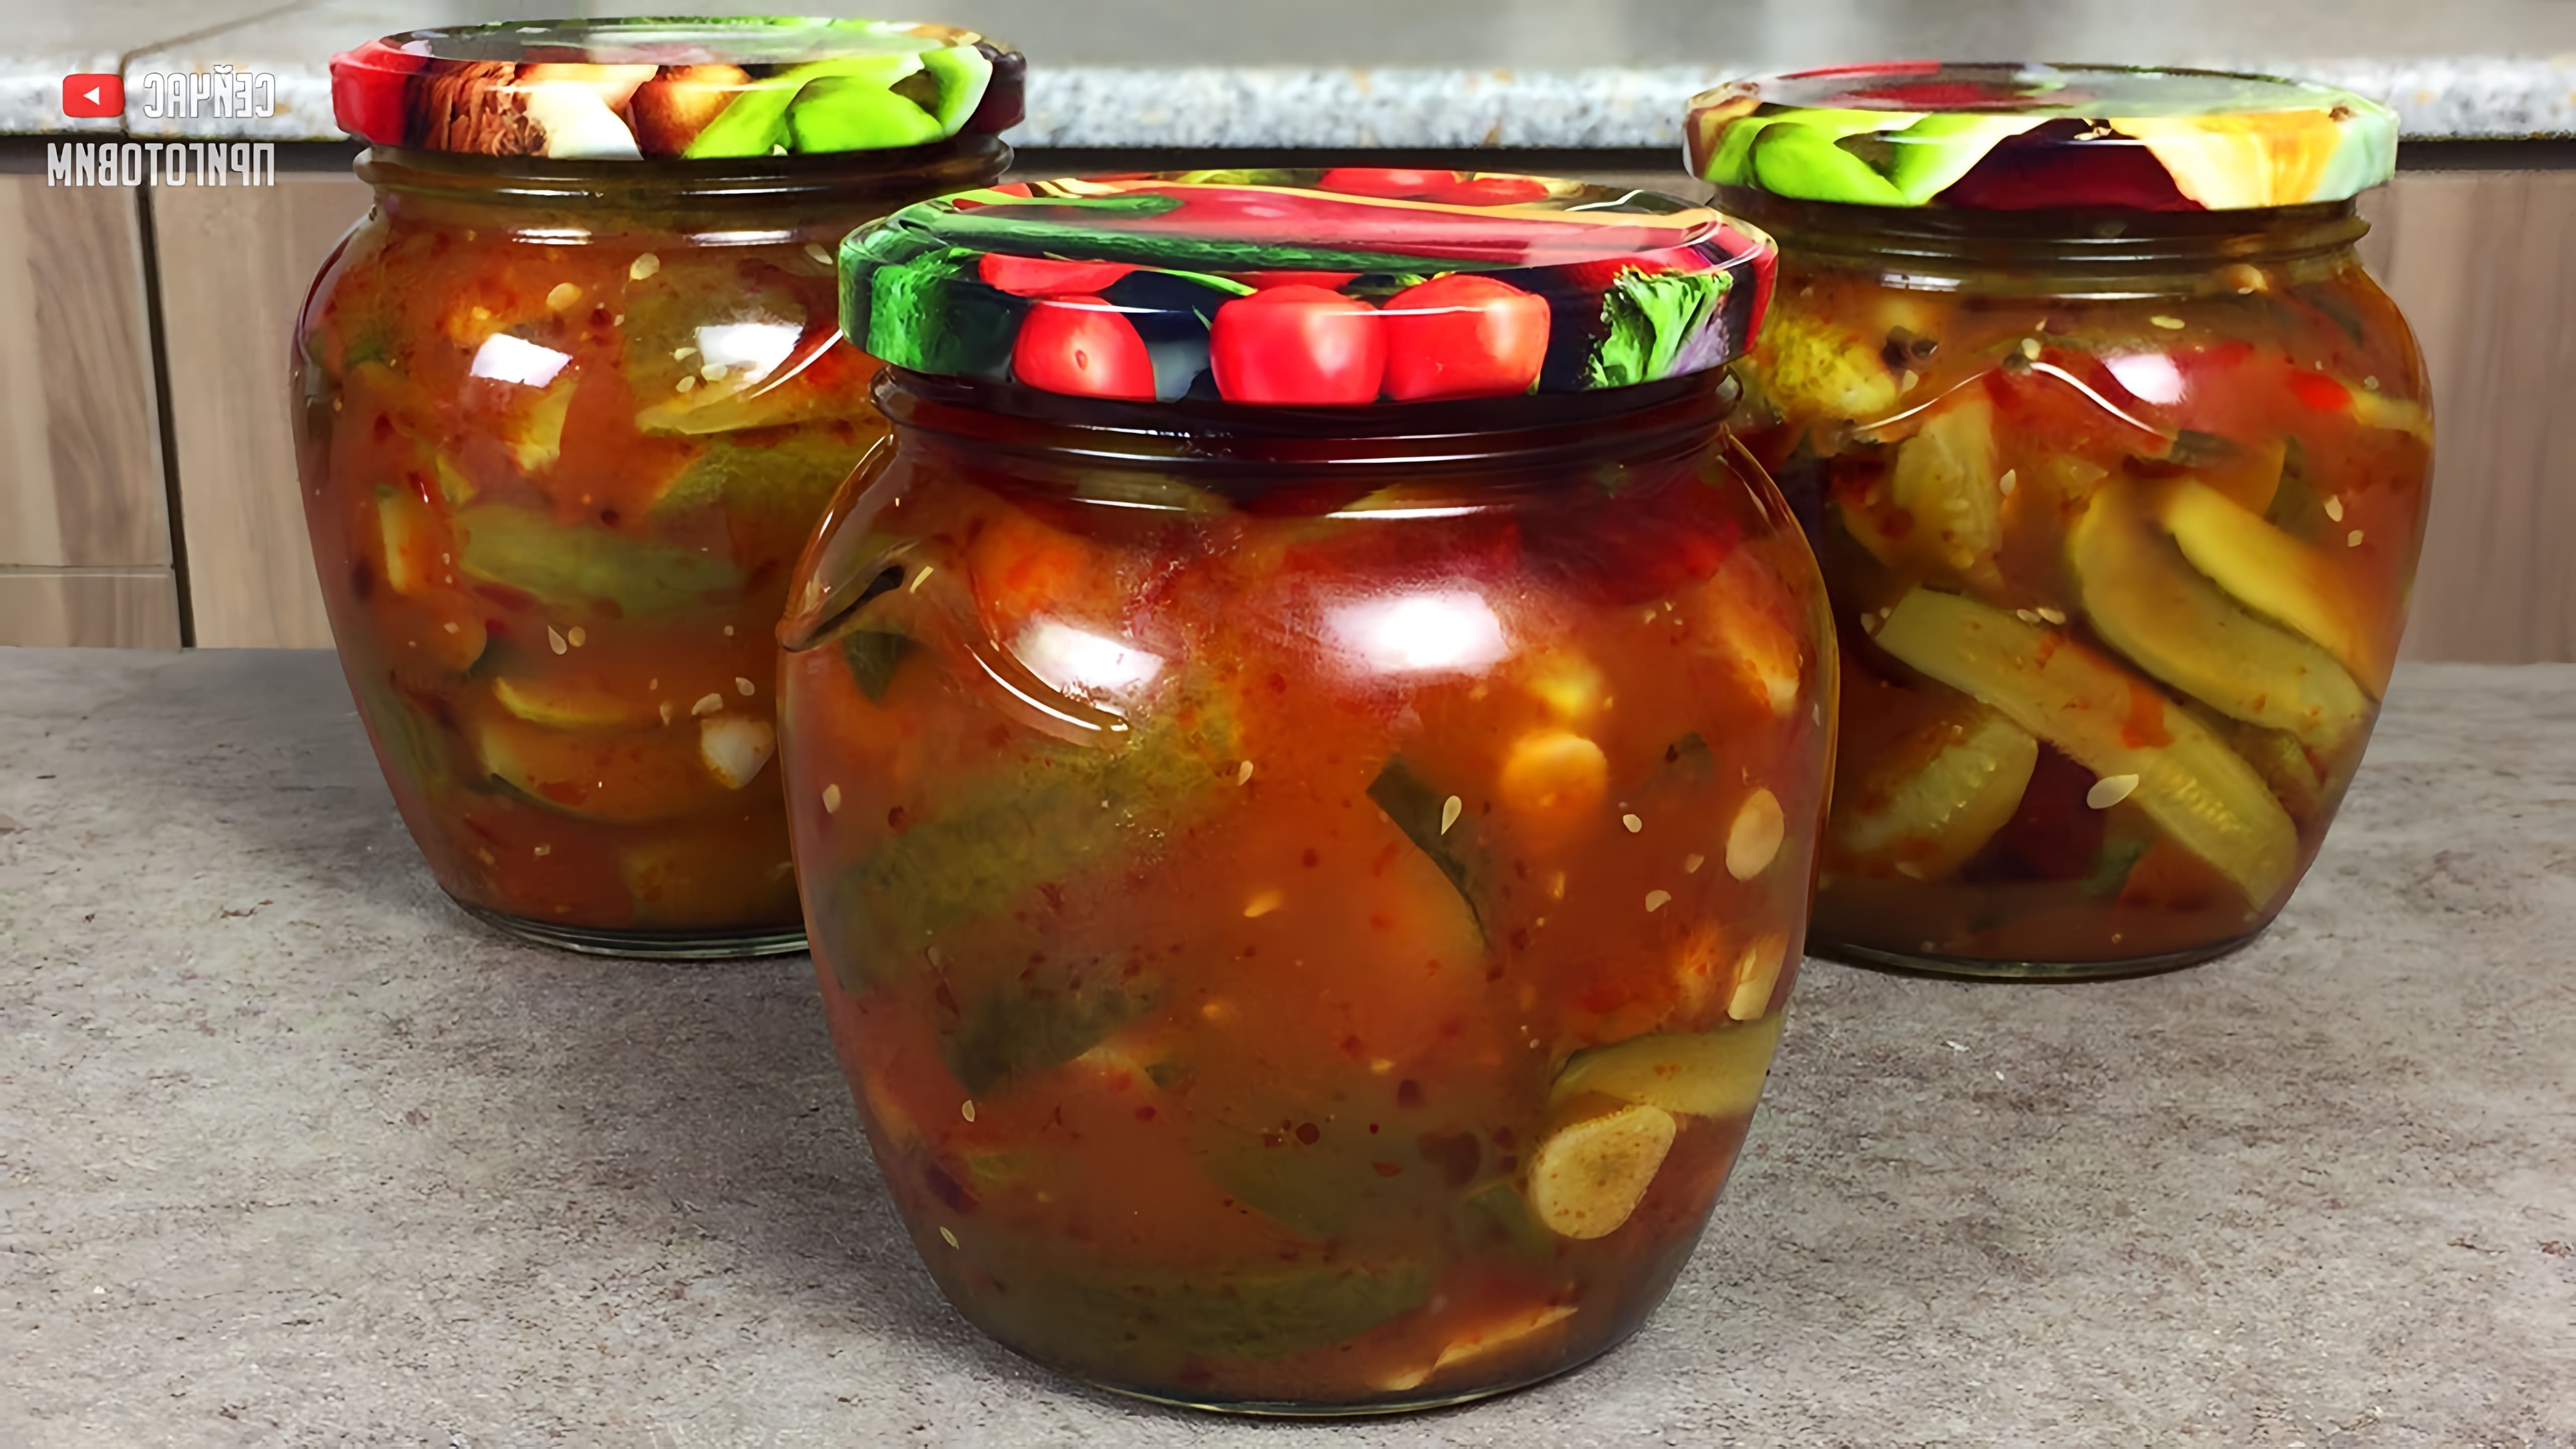 В этом видео представлен рецепт приготовления огурцов в томатной заливке без стерилизации